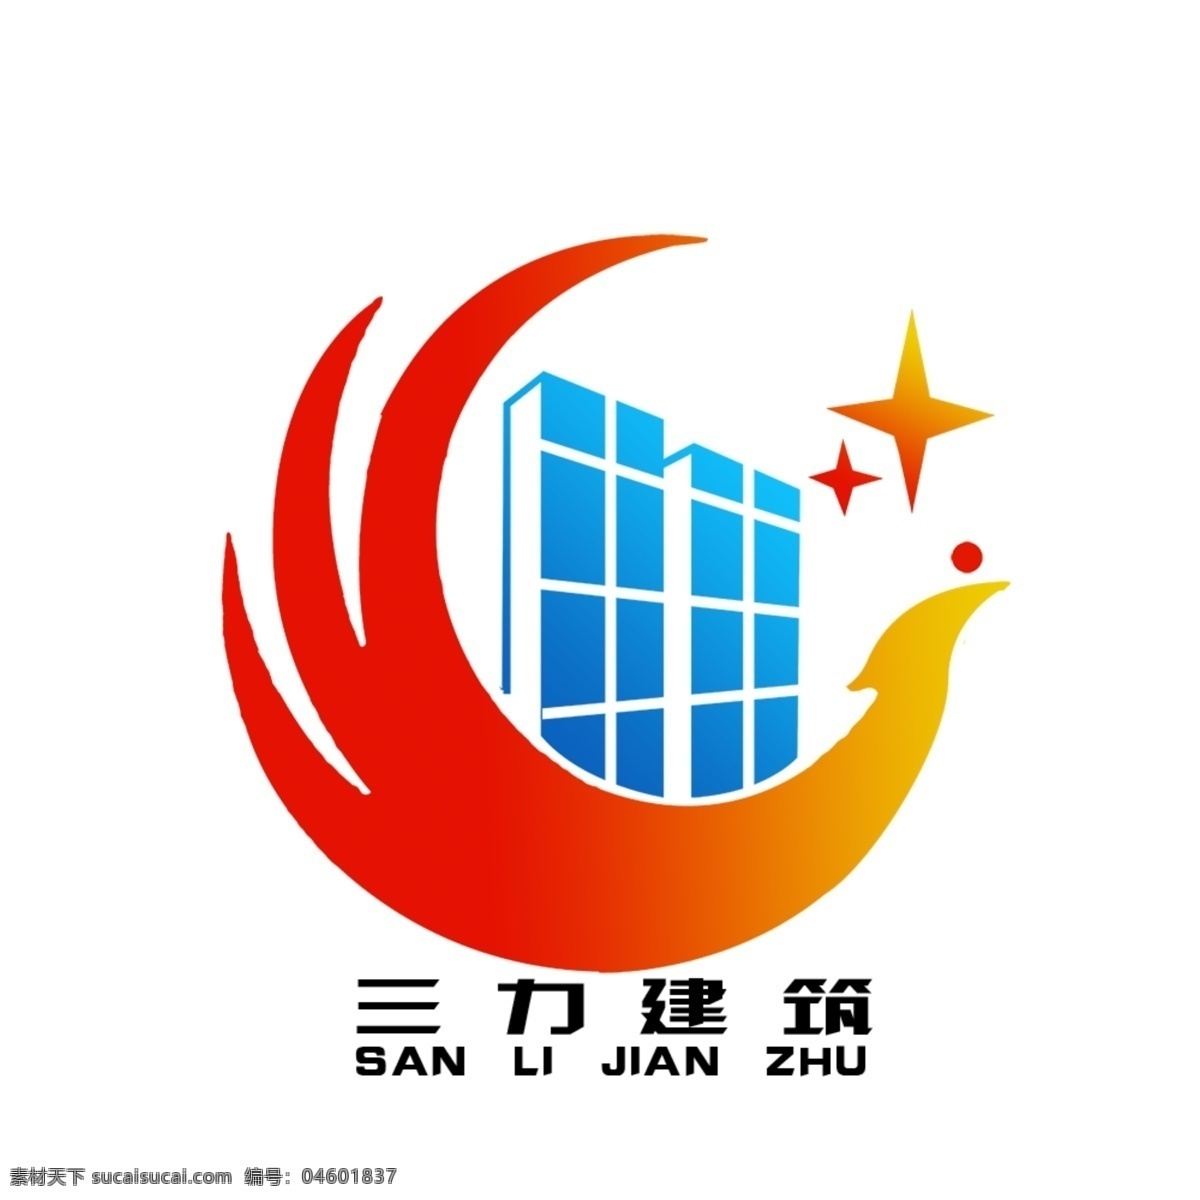 公司 企业 logo 源文件 标志 徽标 psd源文件